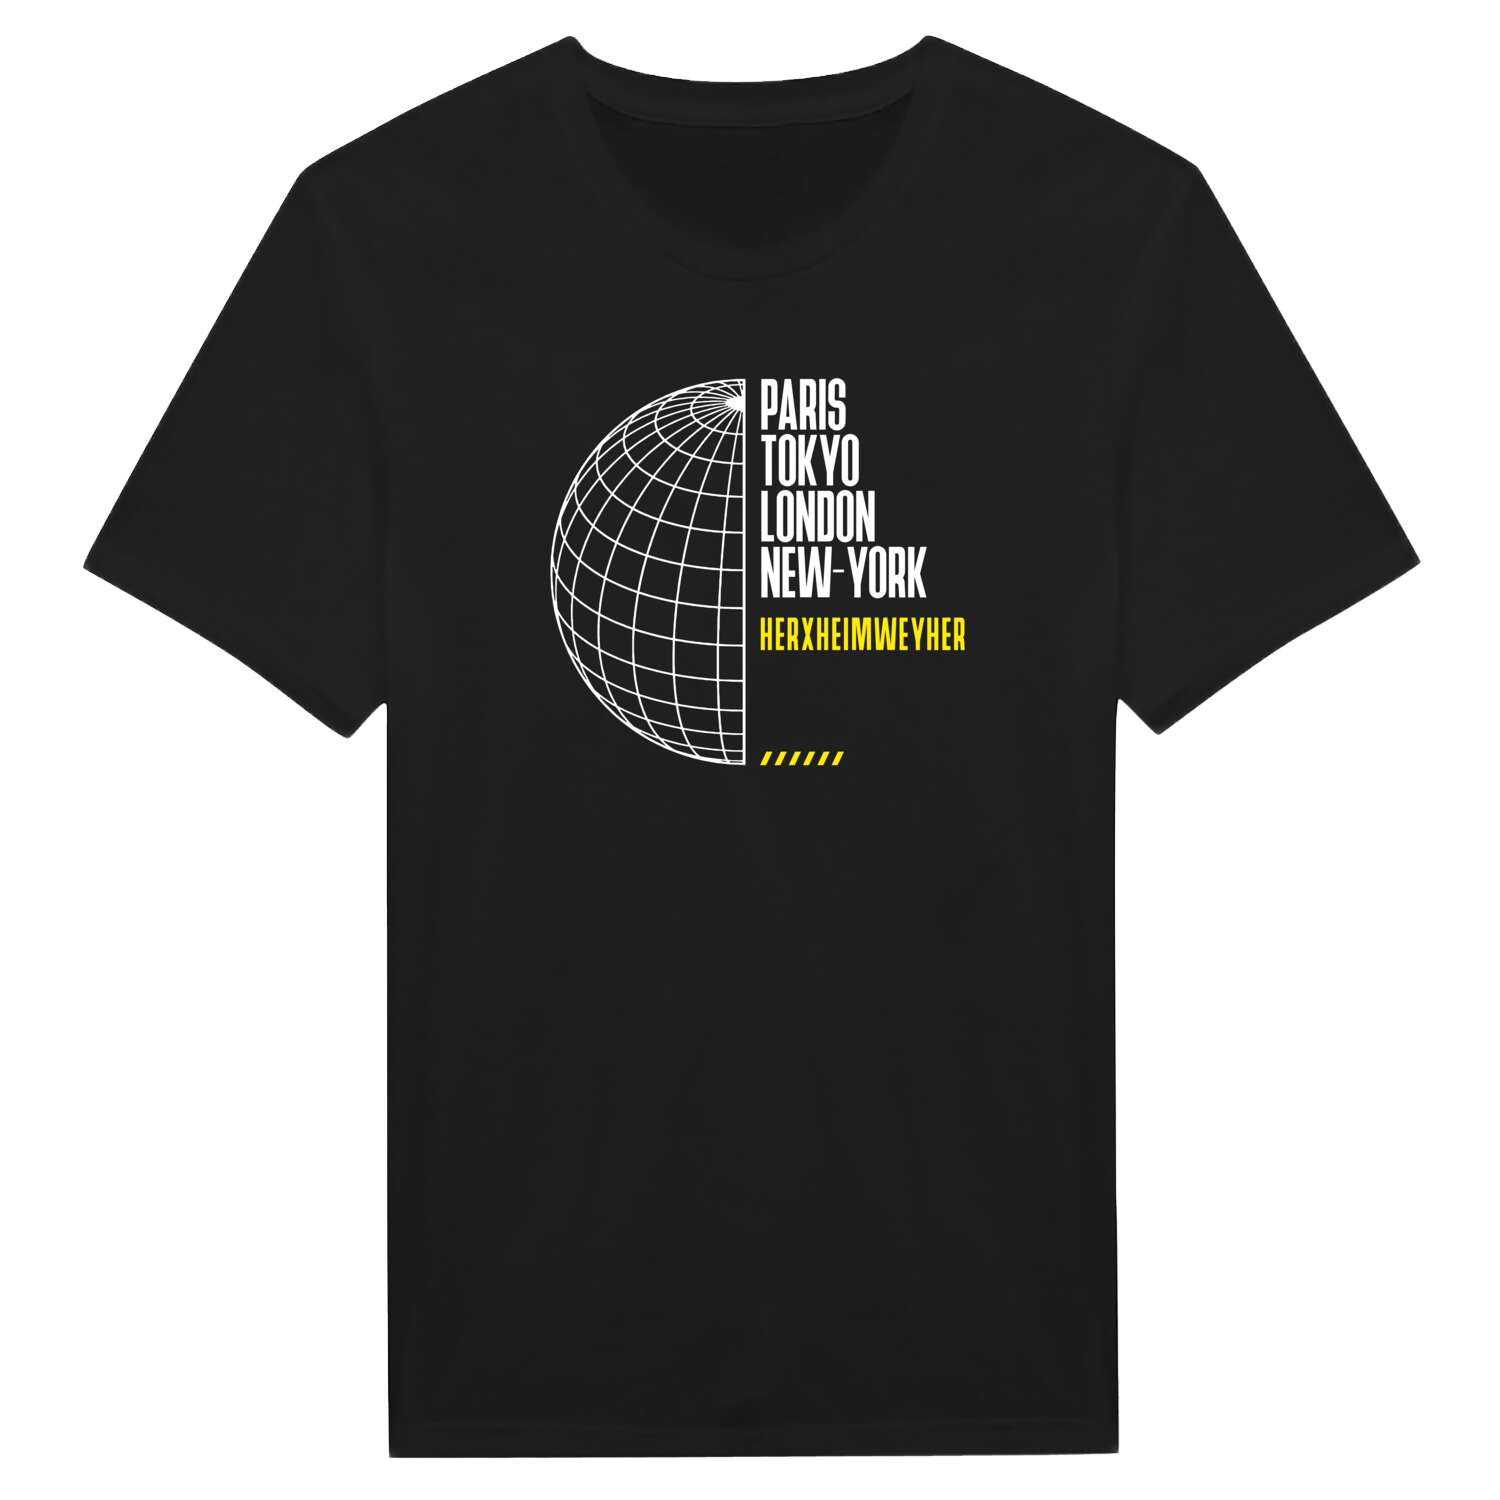 Herxheimweyher T-Shirt »Paris Tokyo London«